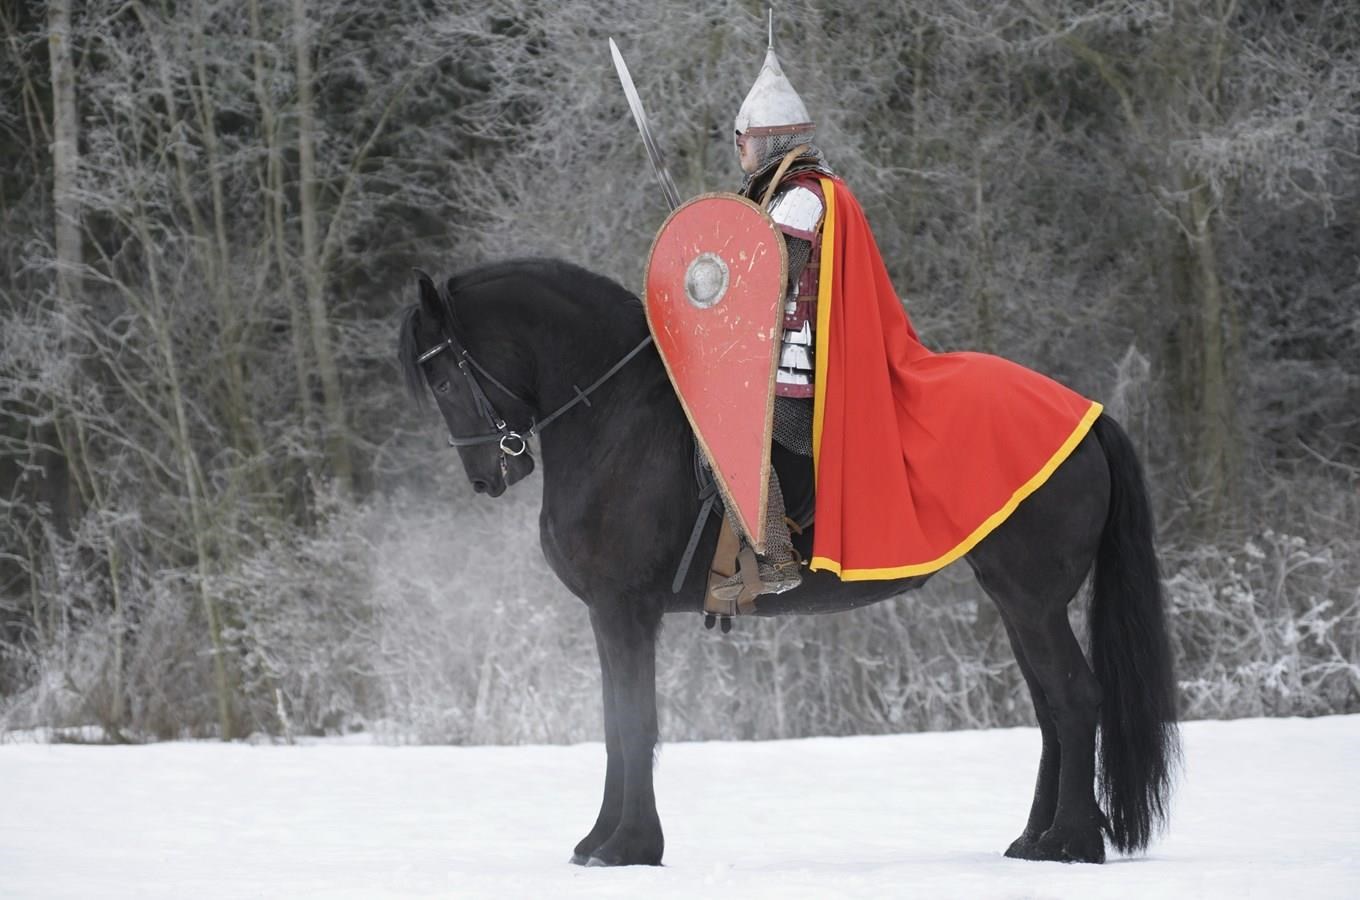 Šermíri opet zkríží své mece v zimní bitve u Podboran